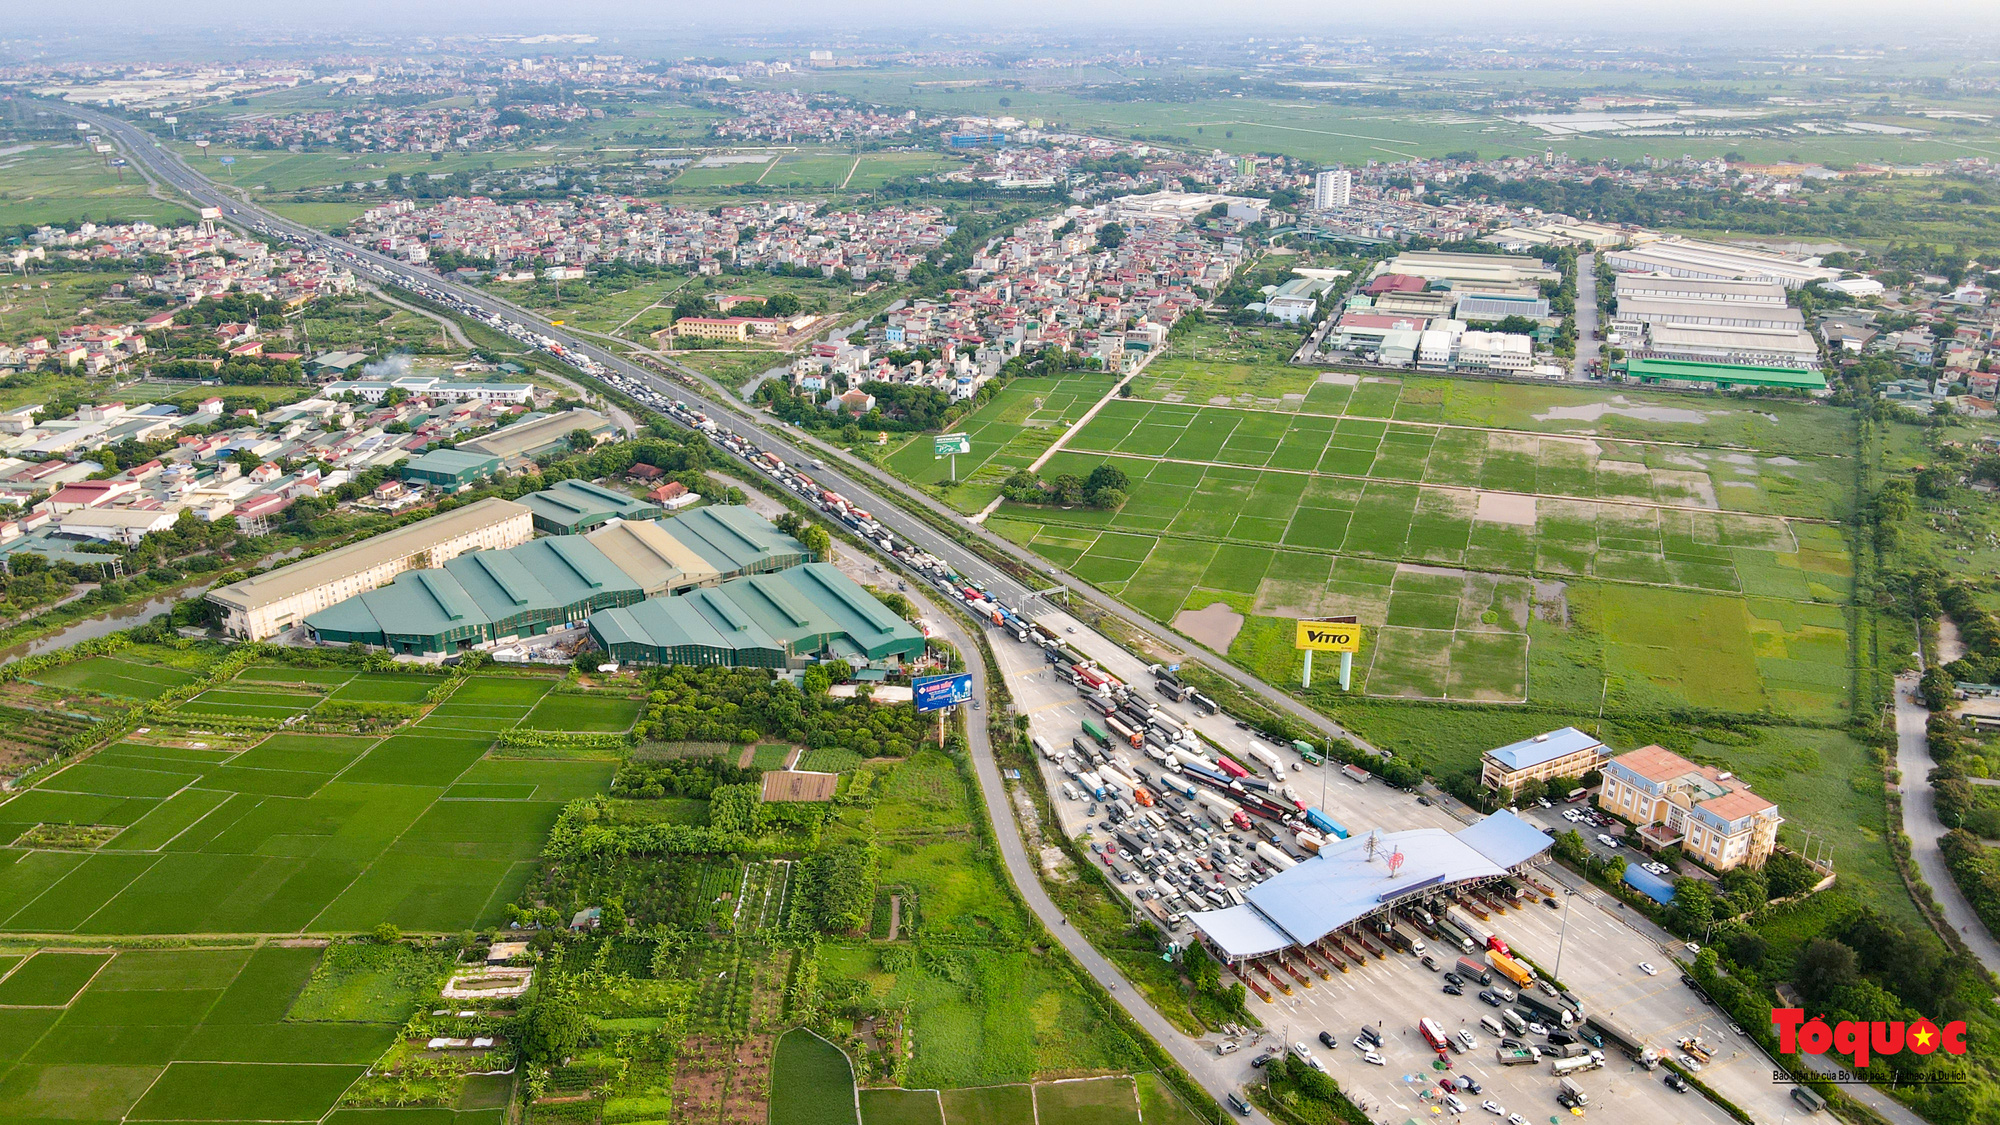 Hà Nội: Hình ảnh phương tiện xếp hàng dài cả km tại cửa ngõ phía Nam Thủ đô - Ảnh 11.